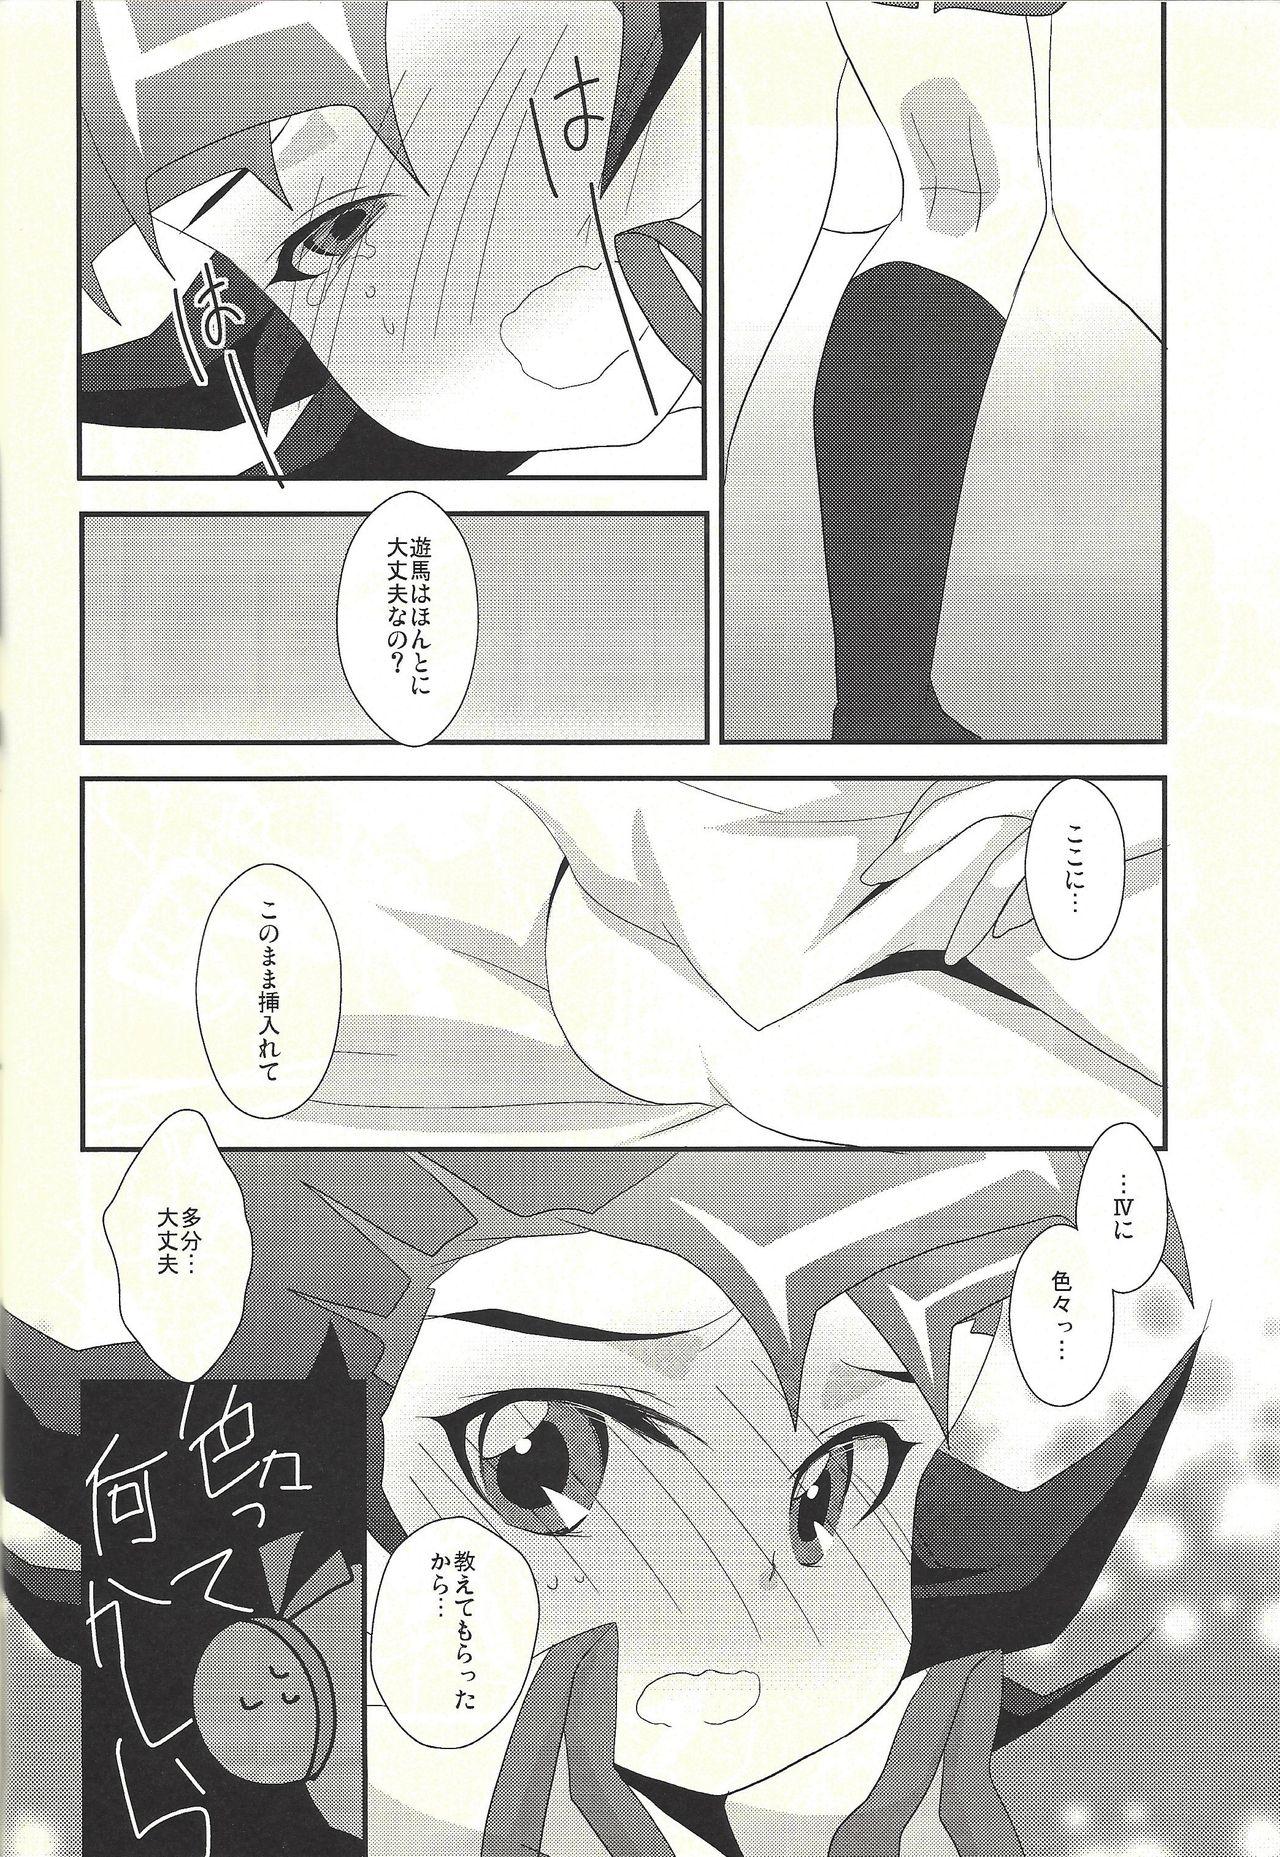 Tgirls Watashi mo rei. Rei rei hajime chao - Yu-gi-oh zexal Teenage - Page 8